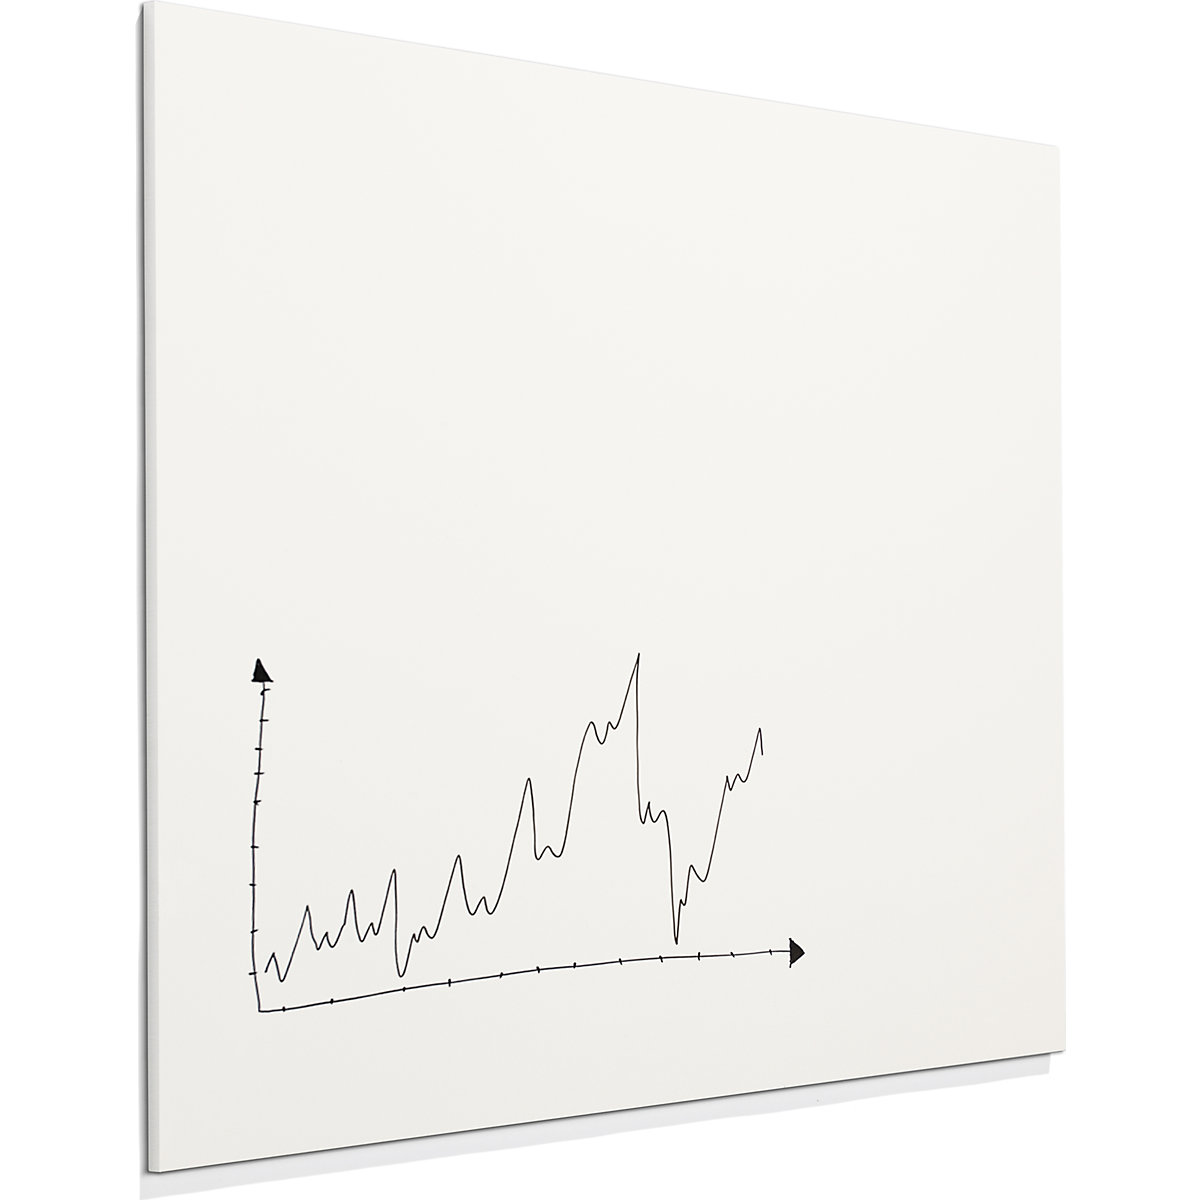 SHARP whiteboard – Chameleon (Product illustration 9)-8